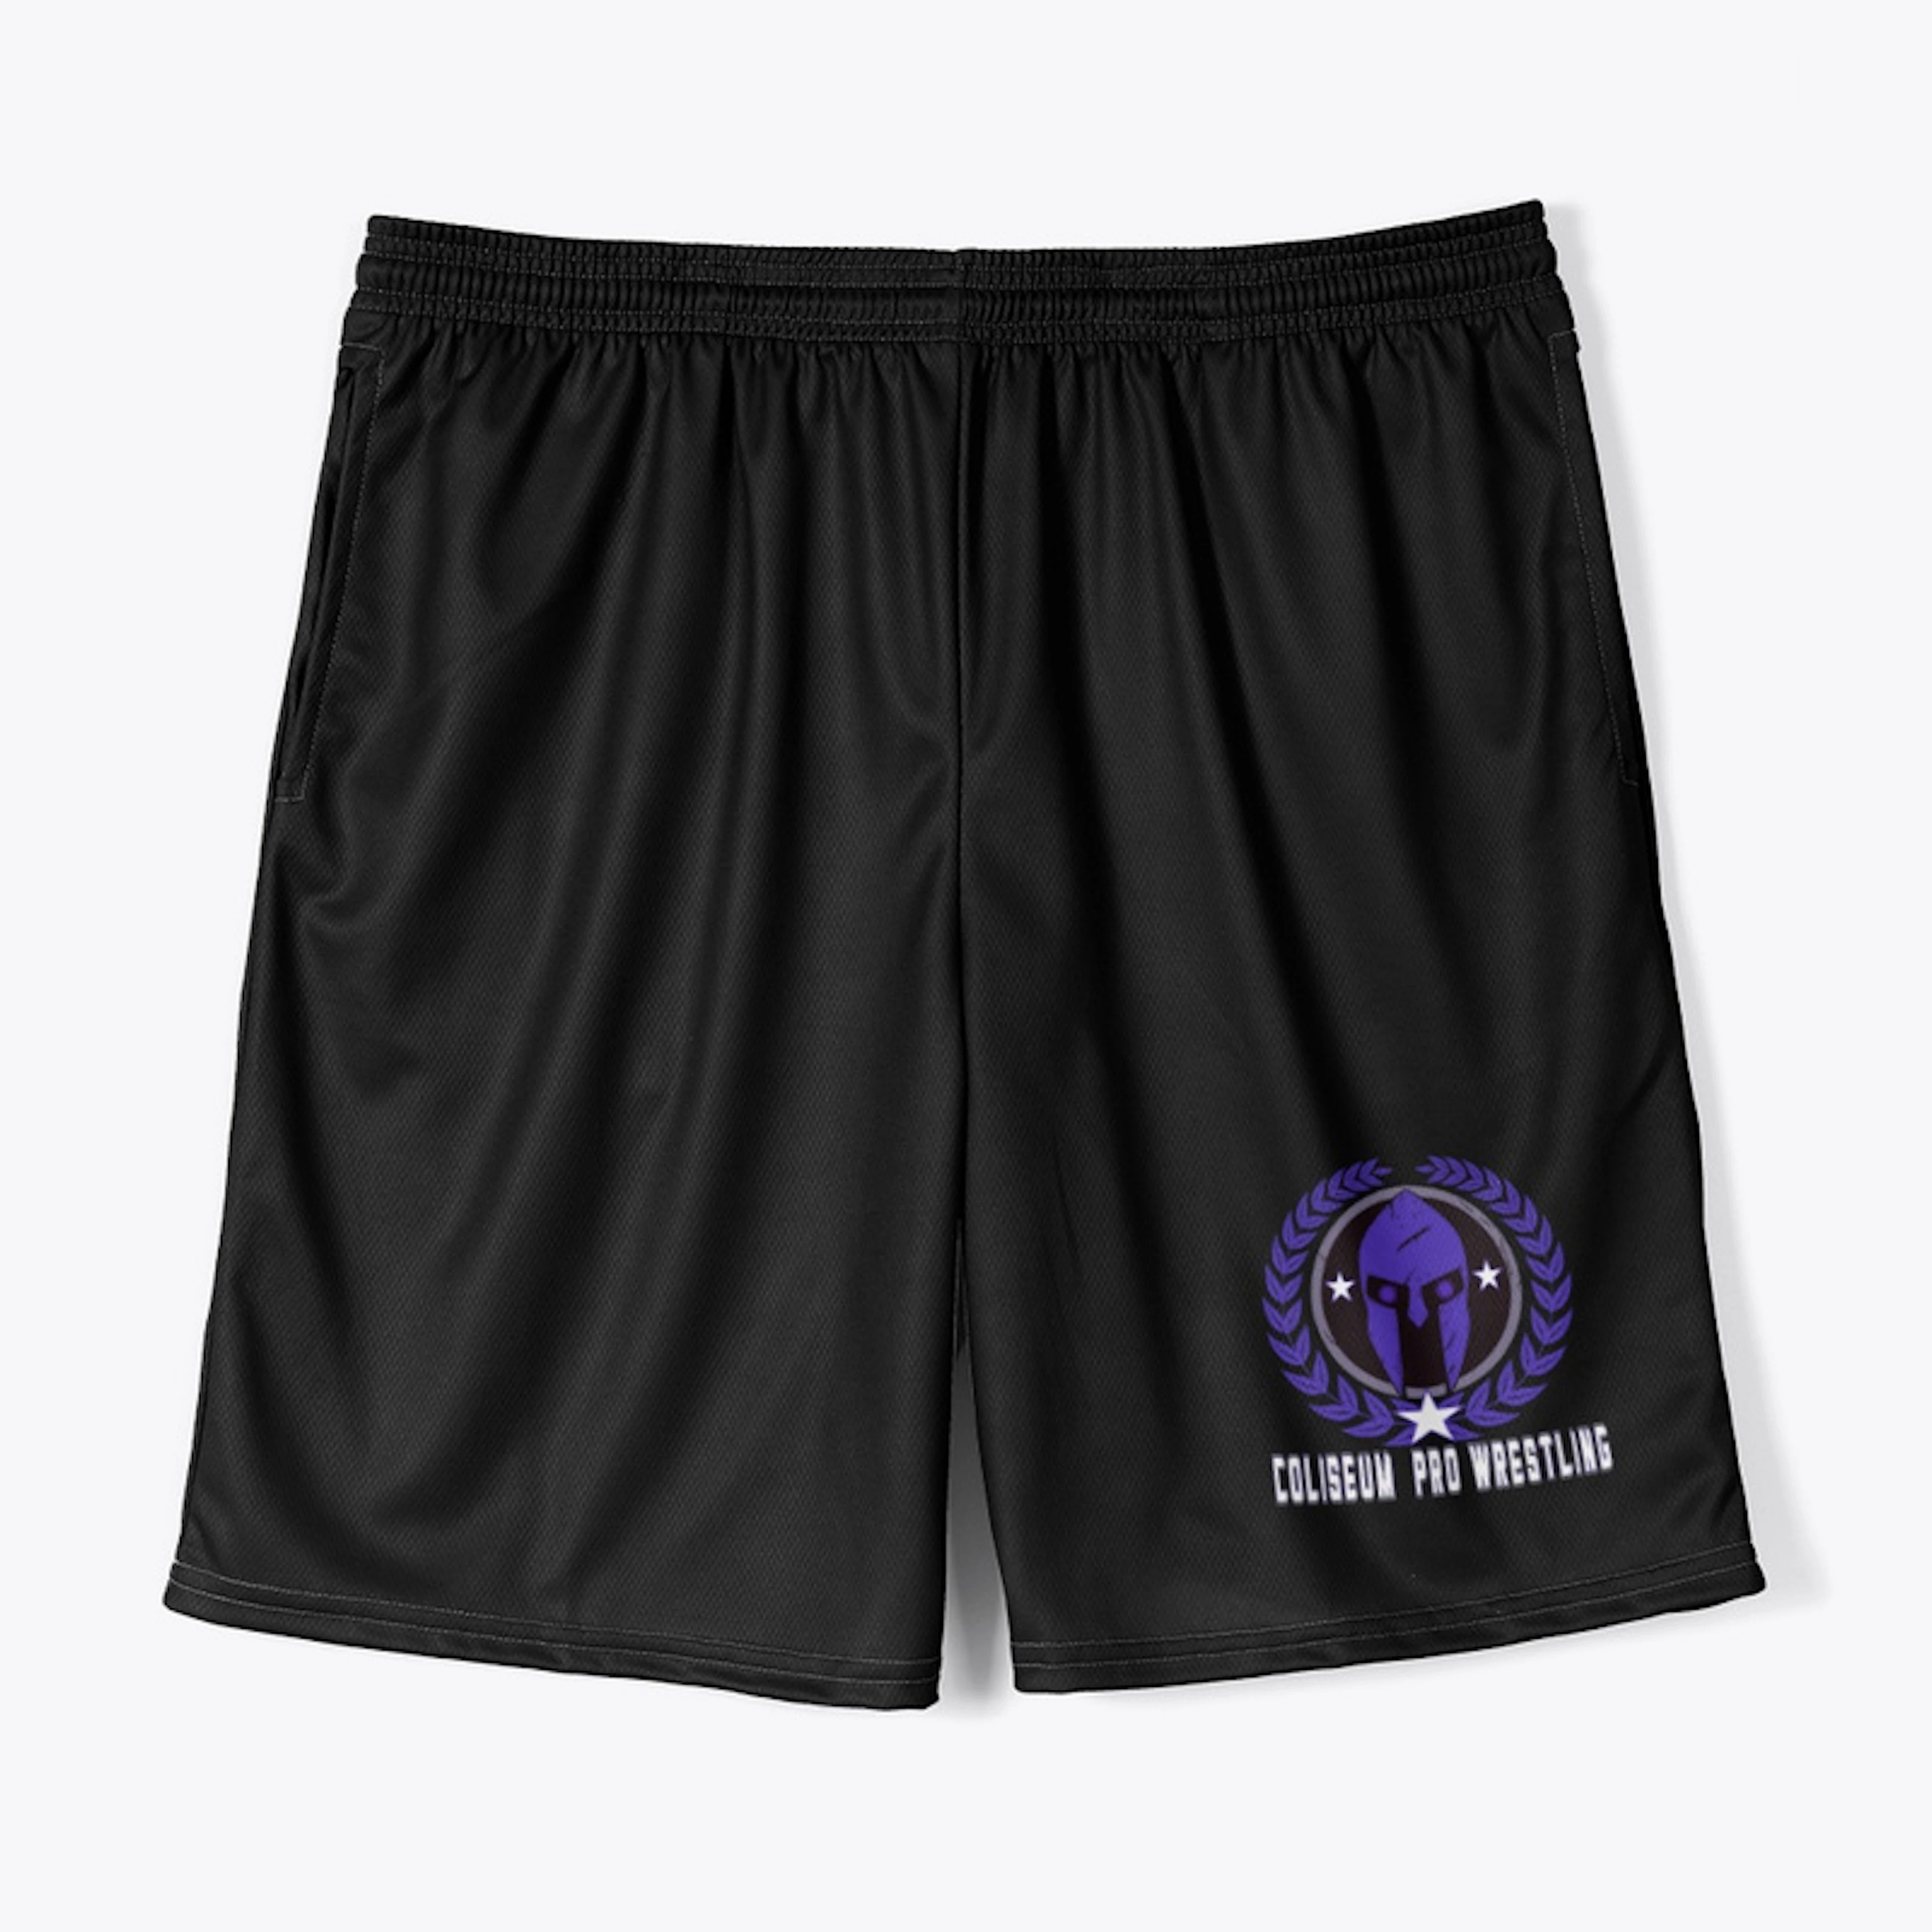 Coliseum Pro Wrestling Logo Shorts